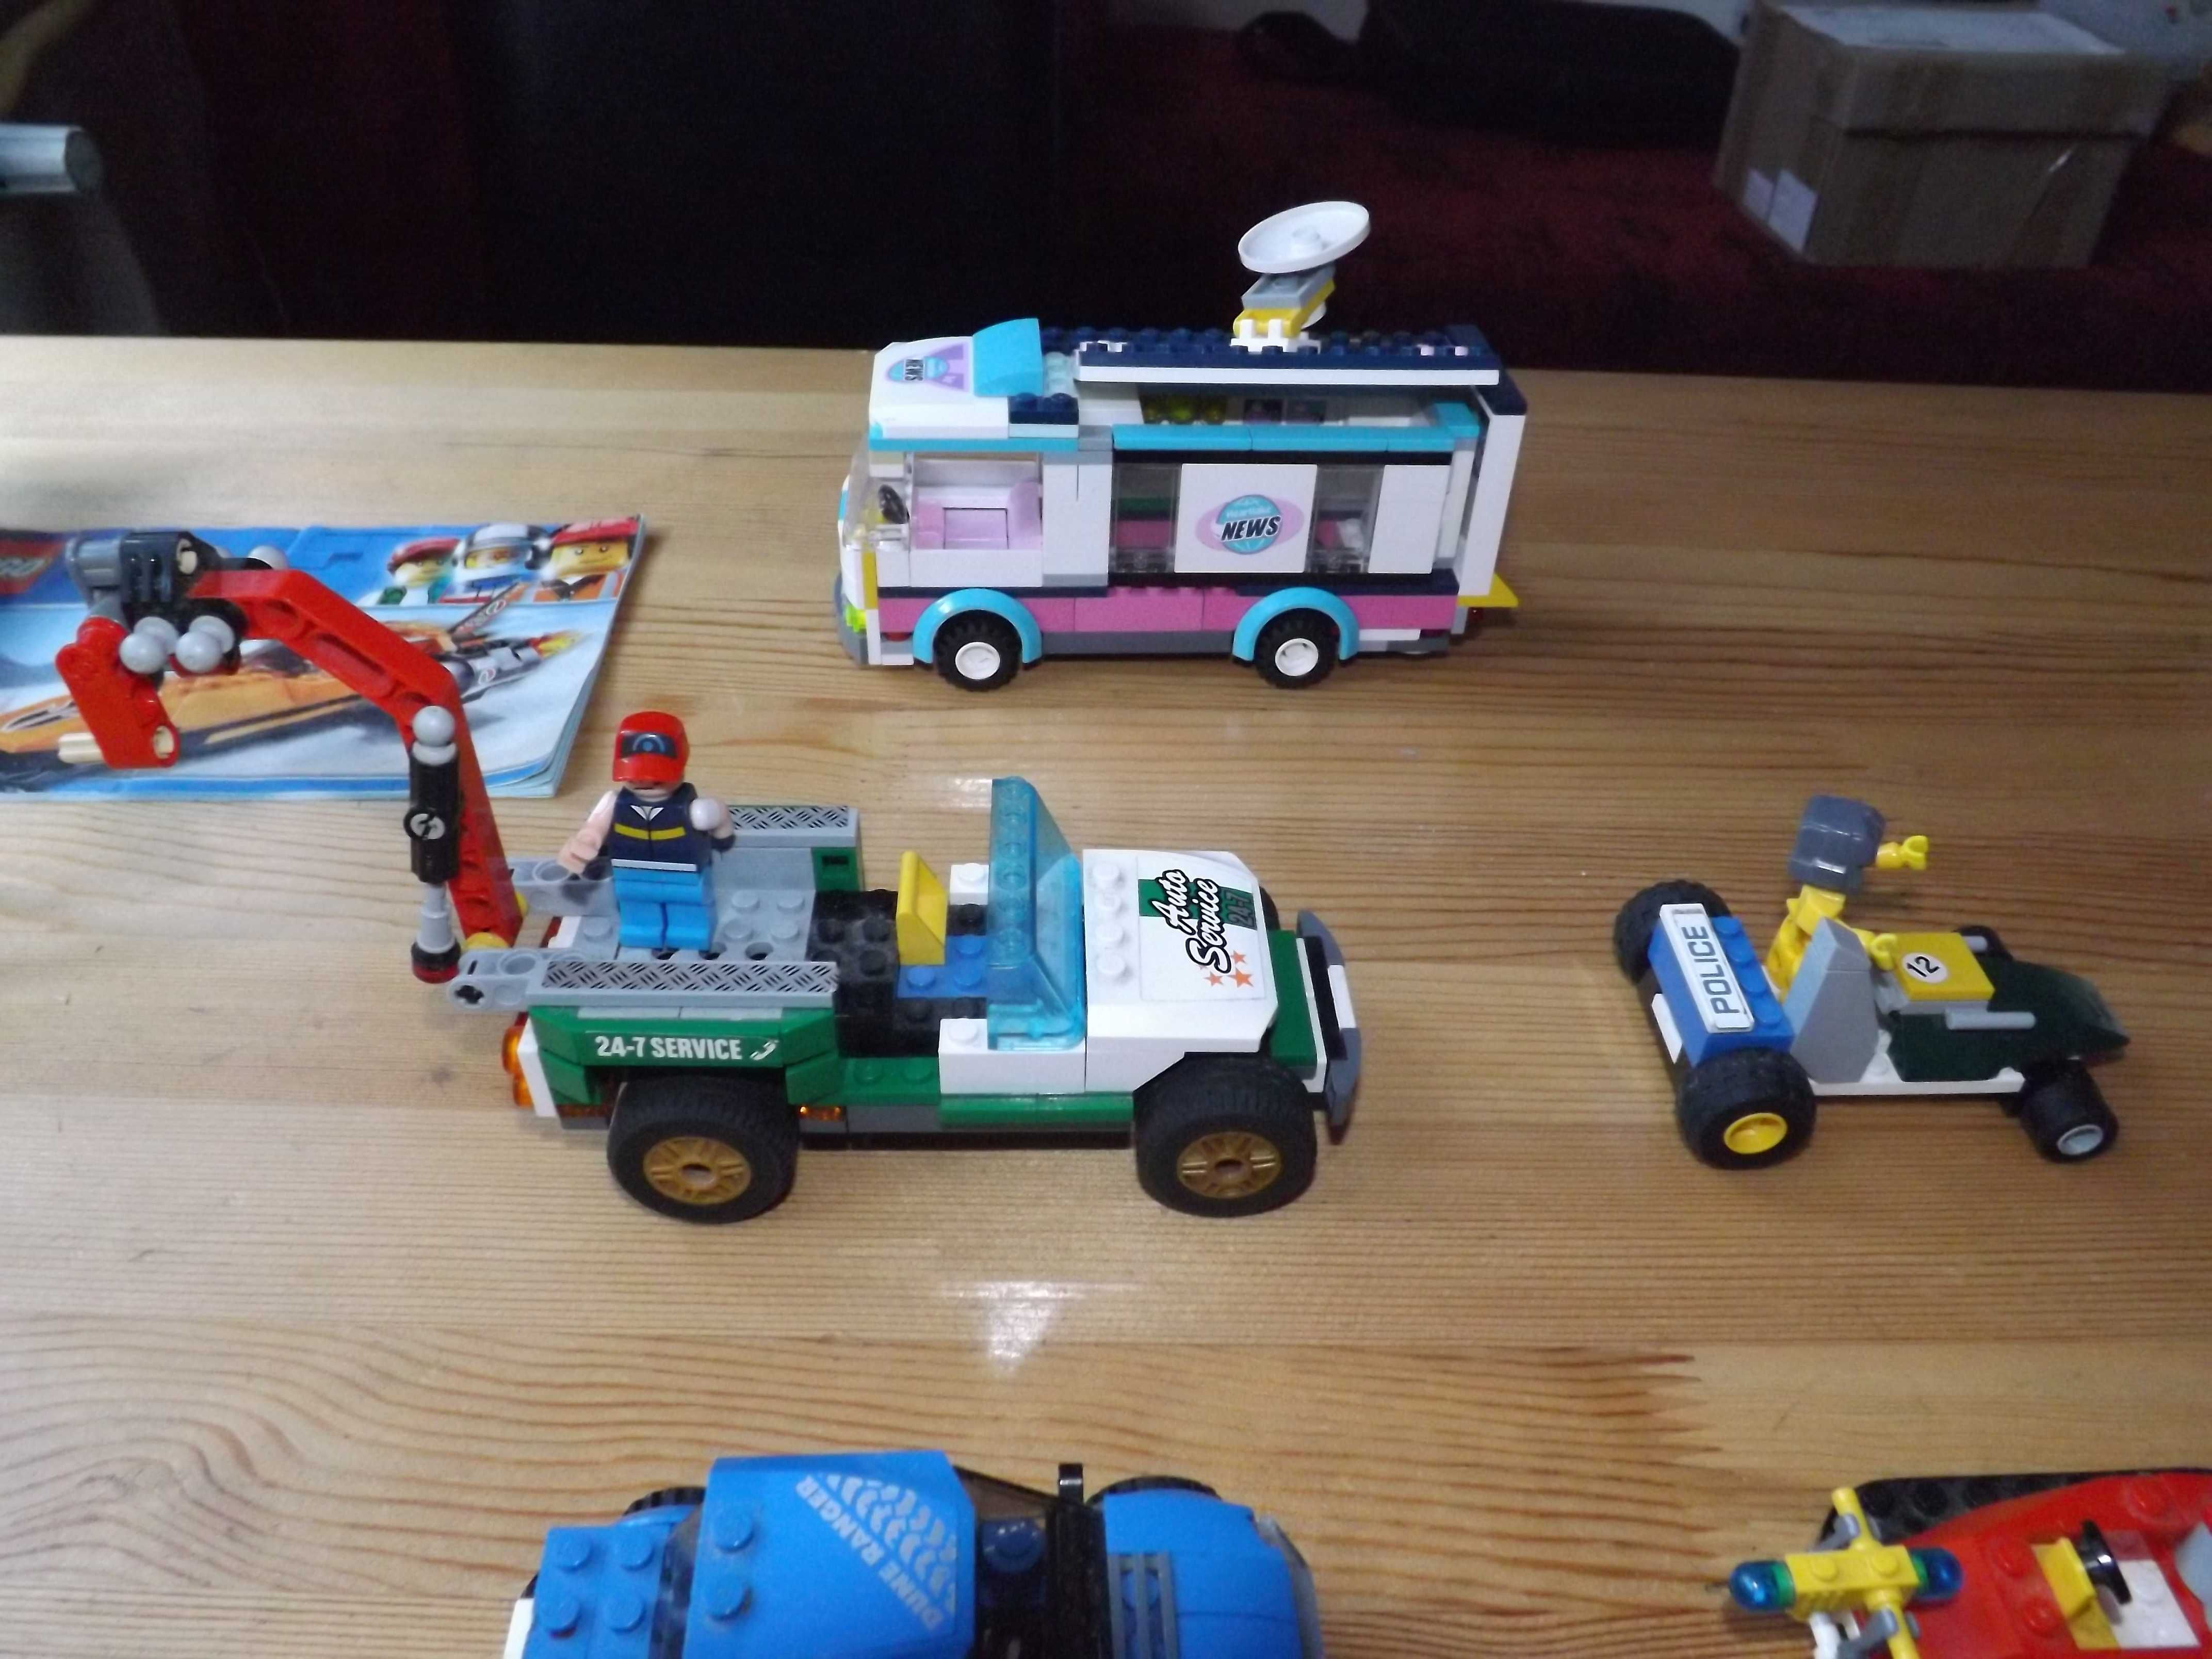 Lego, auta, pojazdy, łodzie, klocki, kolekcja, creator